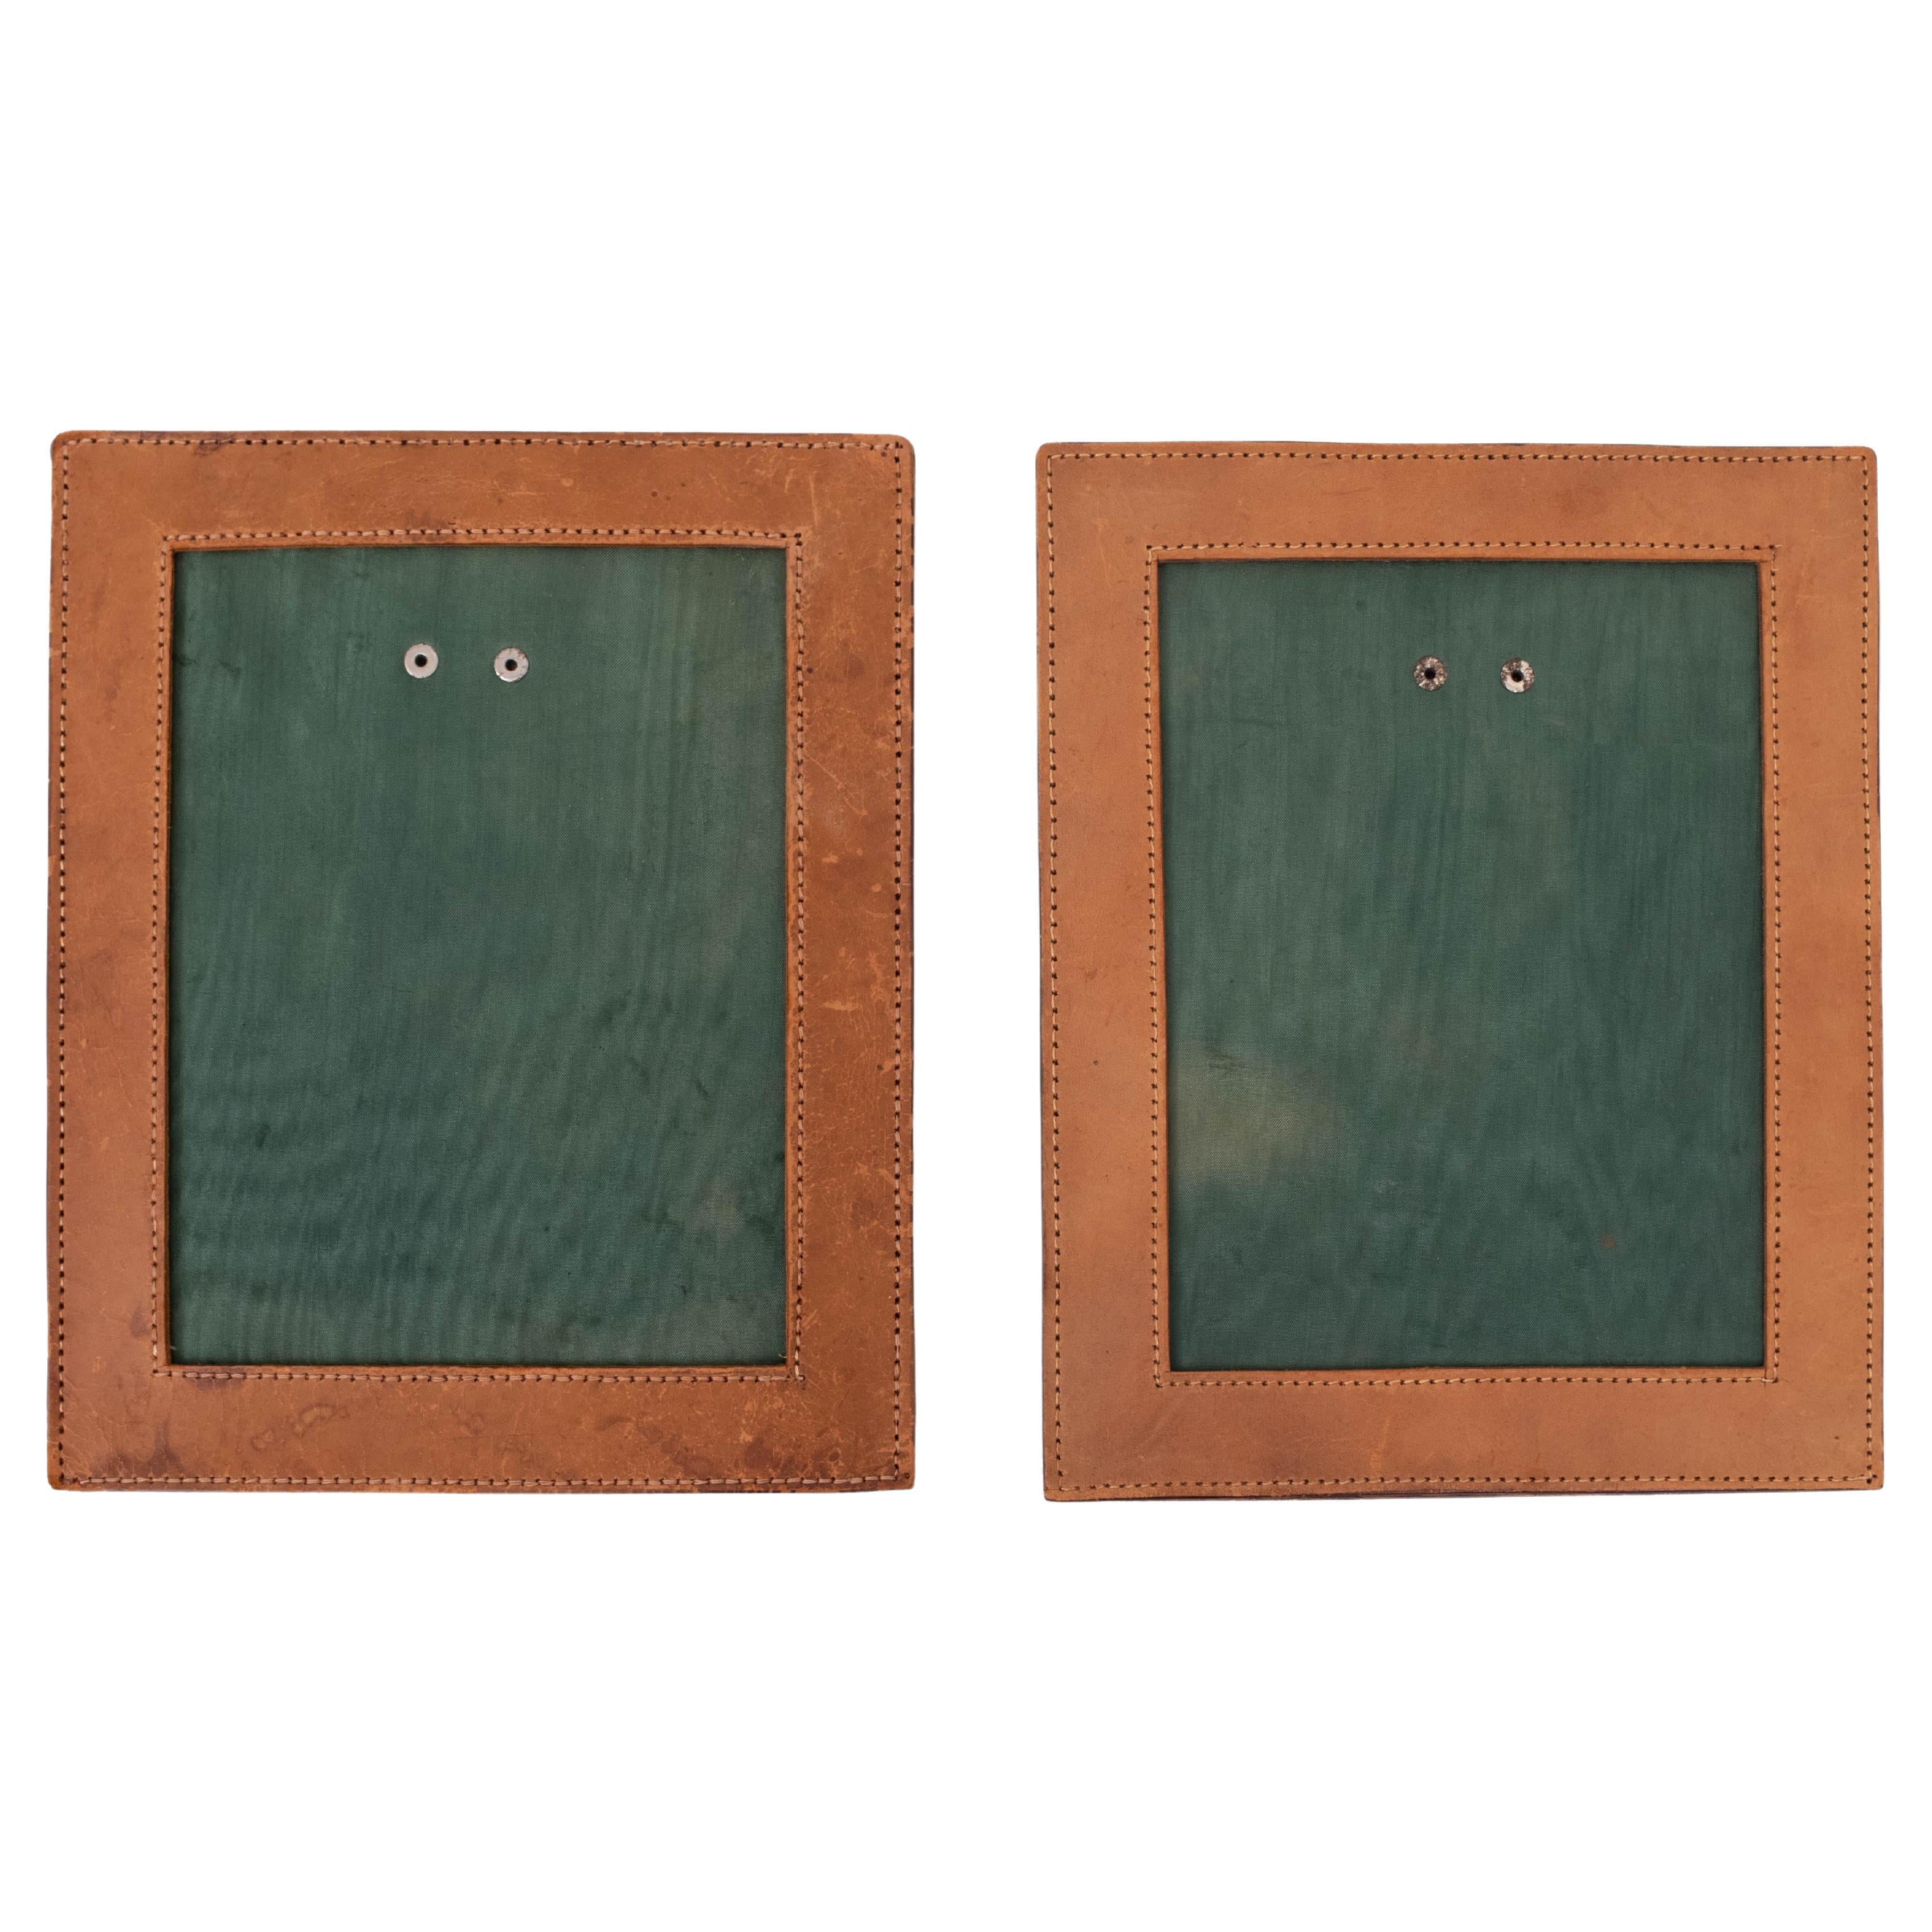 Two stich Leather Photo frames. Unique set. Camel color. 1960s so stylish.